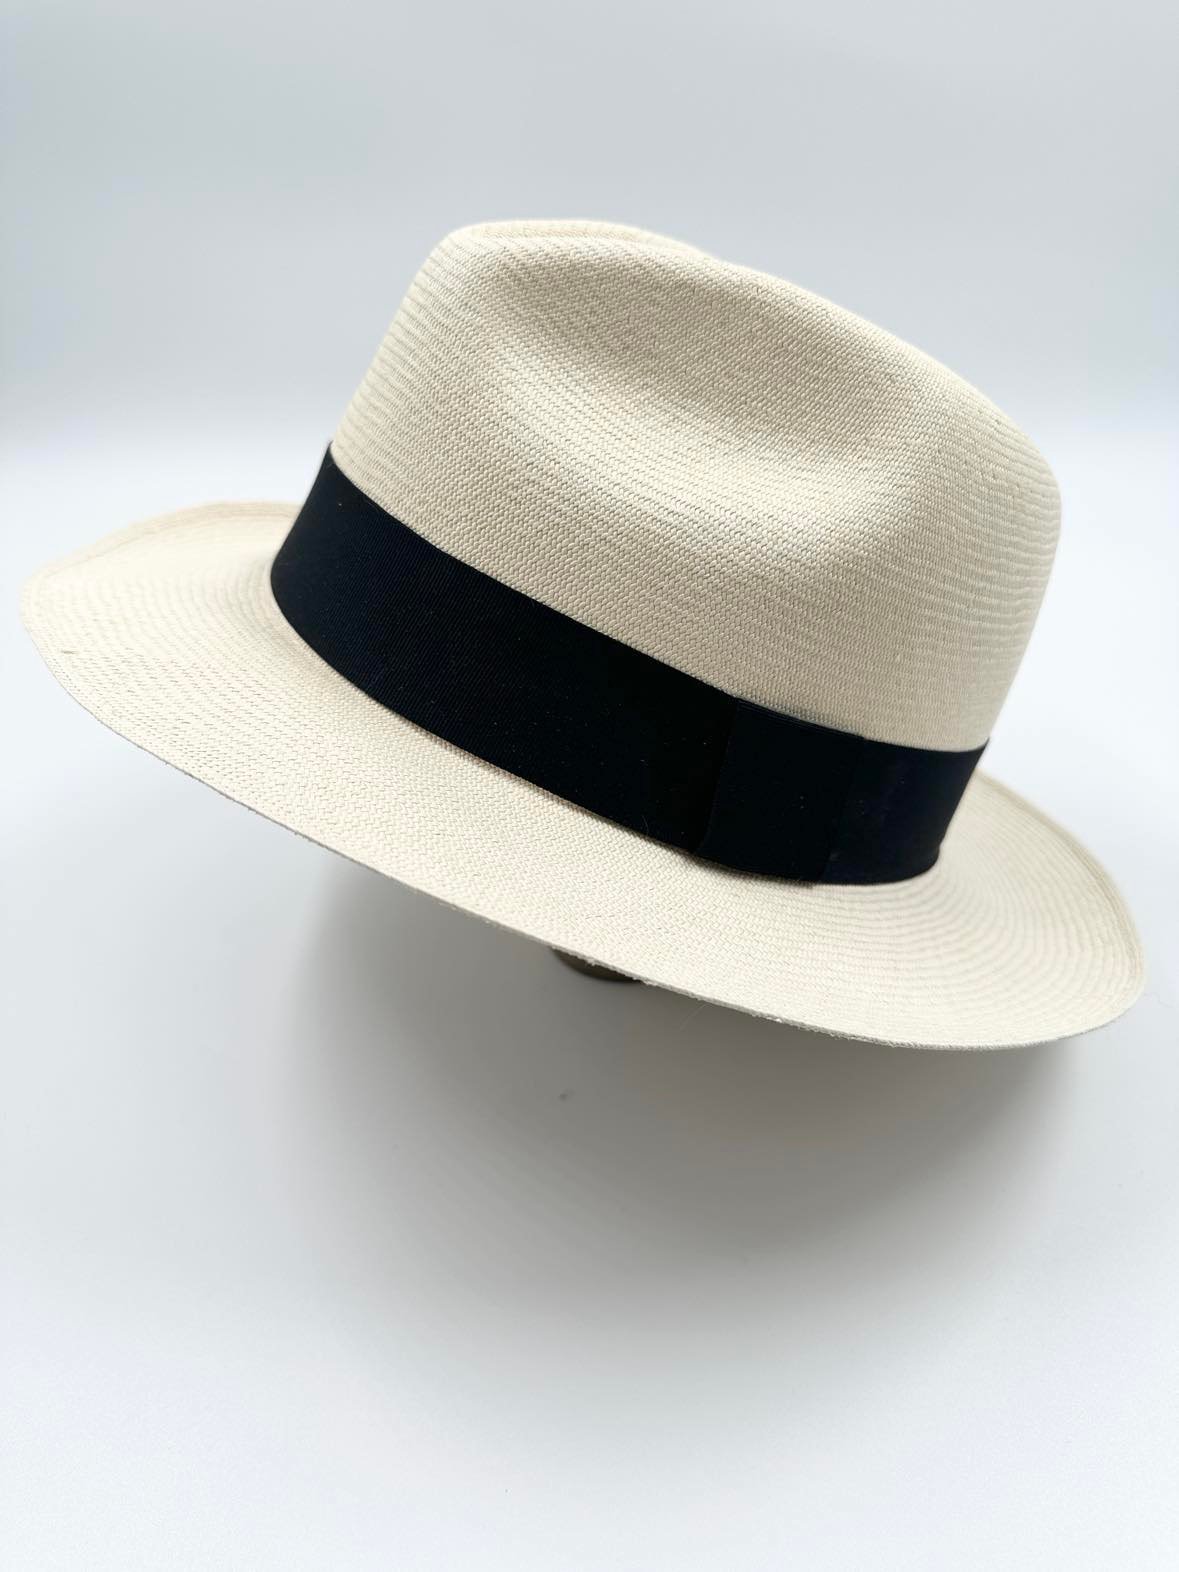 Ægte Montecristi Fedora Panama Hat med en kvalitet på 21-22 fletninger pr. inch - håndflettede i Ecuador og unikke hver og en